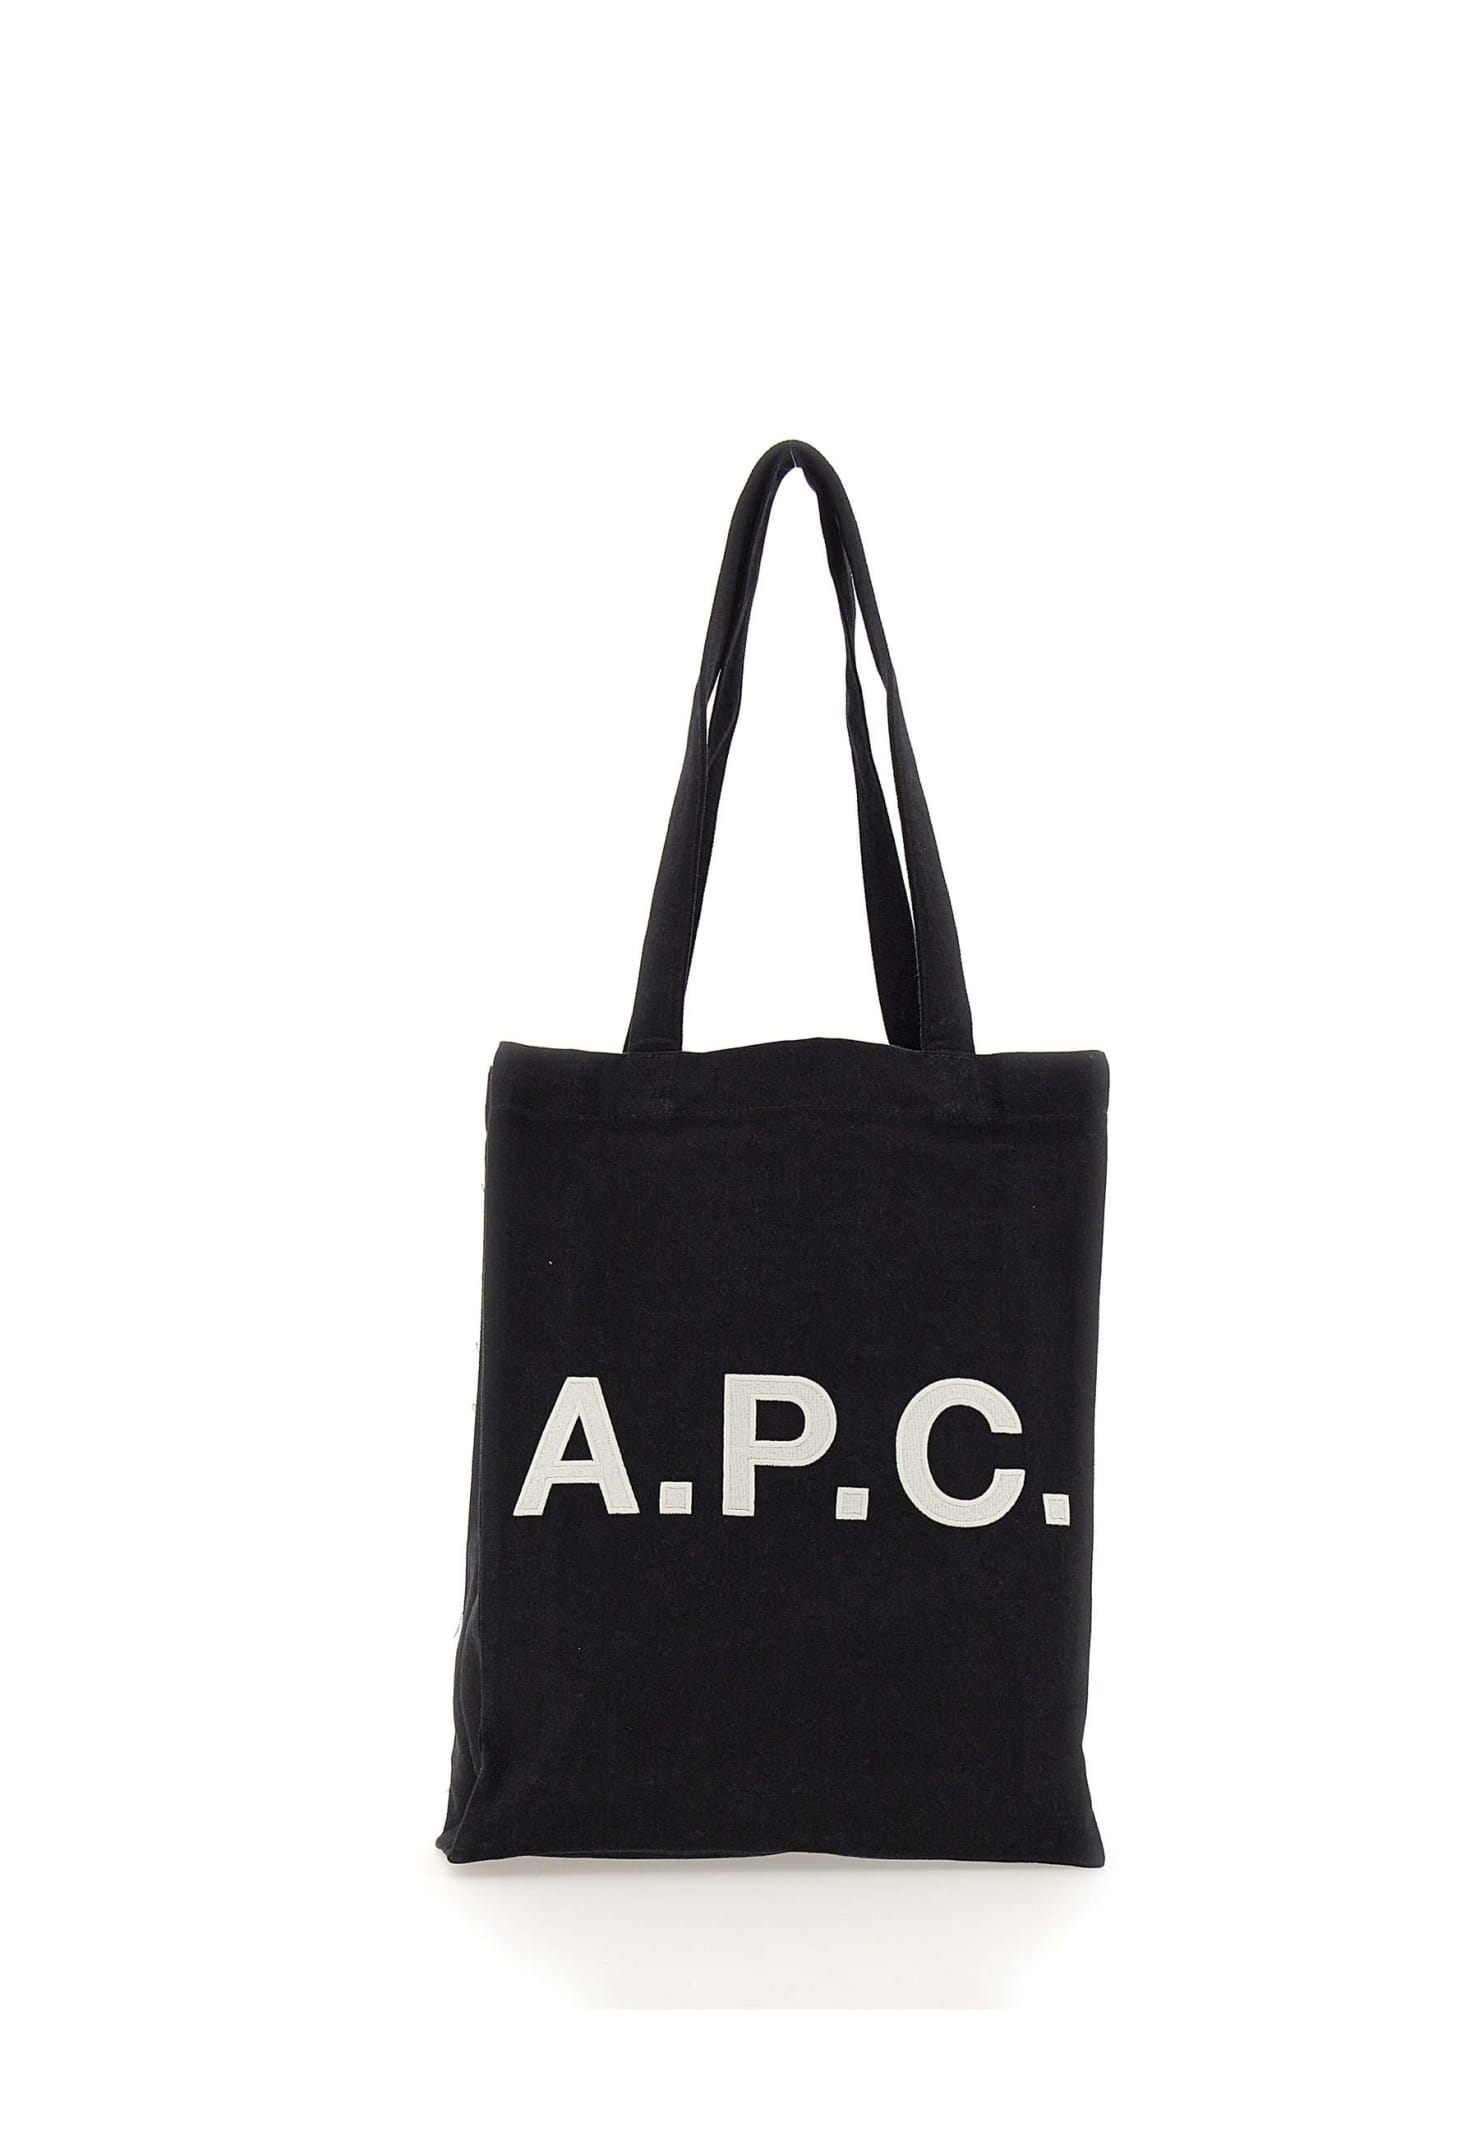 A.P.C. Bag tote Lou